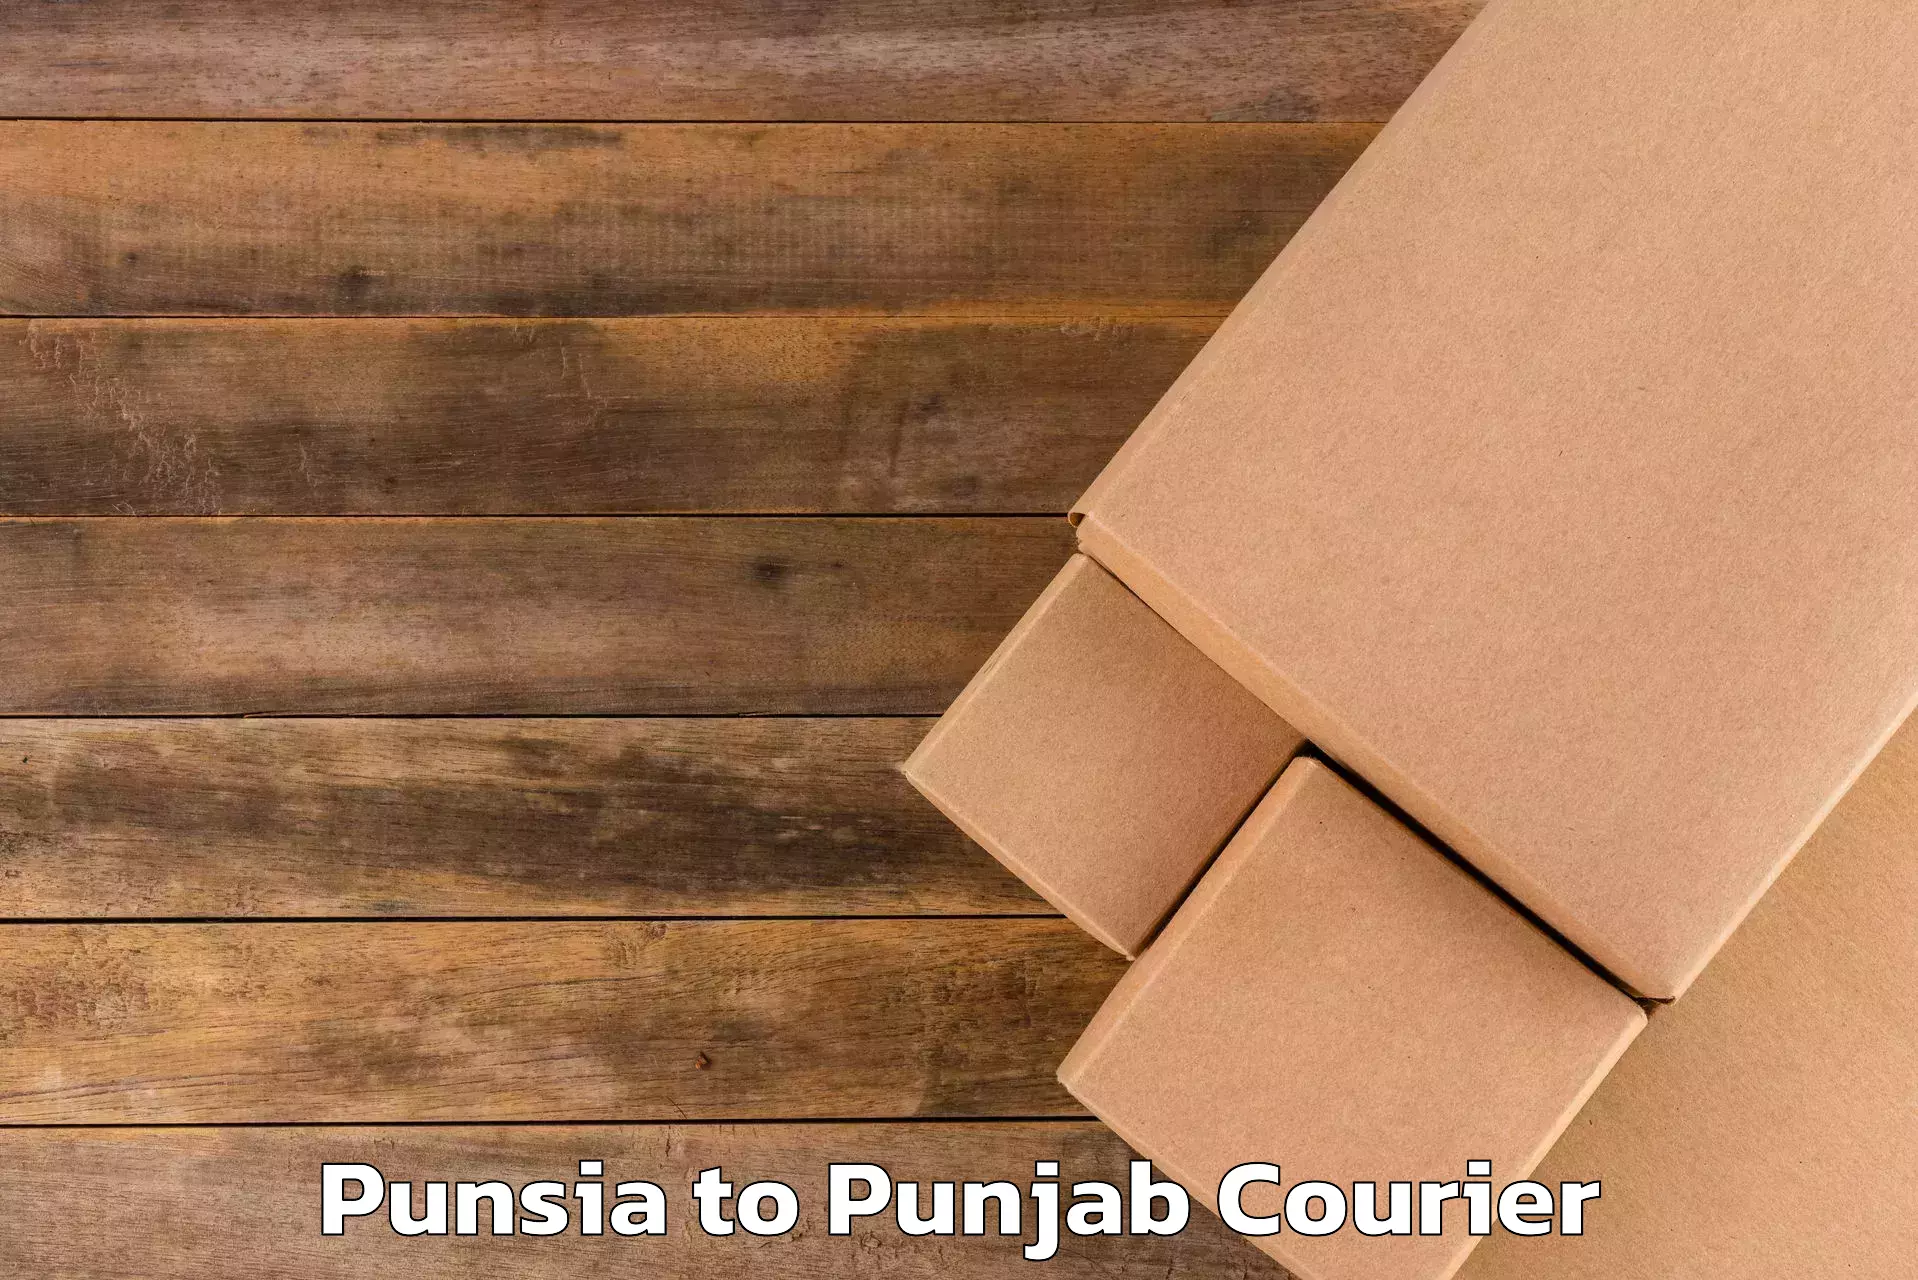 Artwork baggage courier Punsia to Punjab